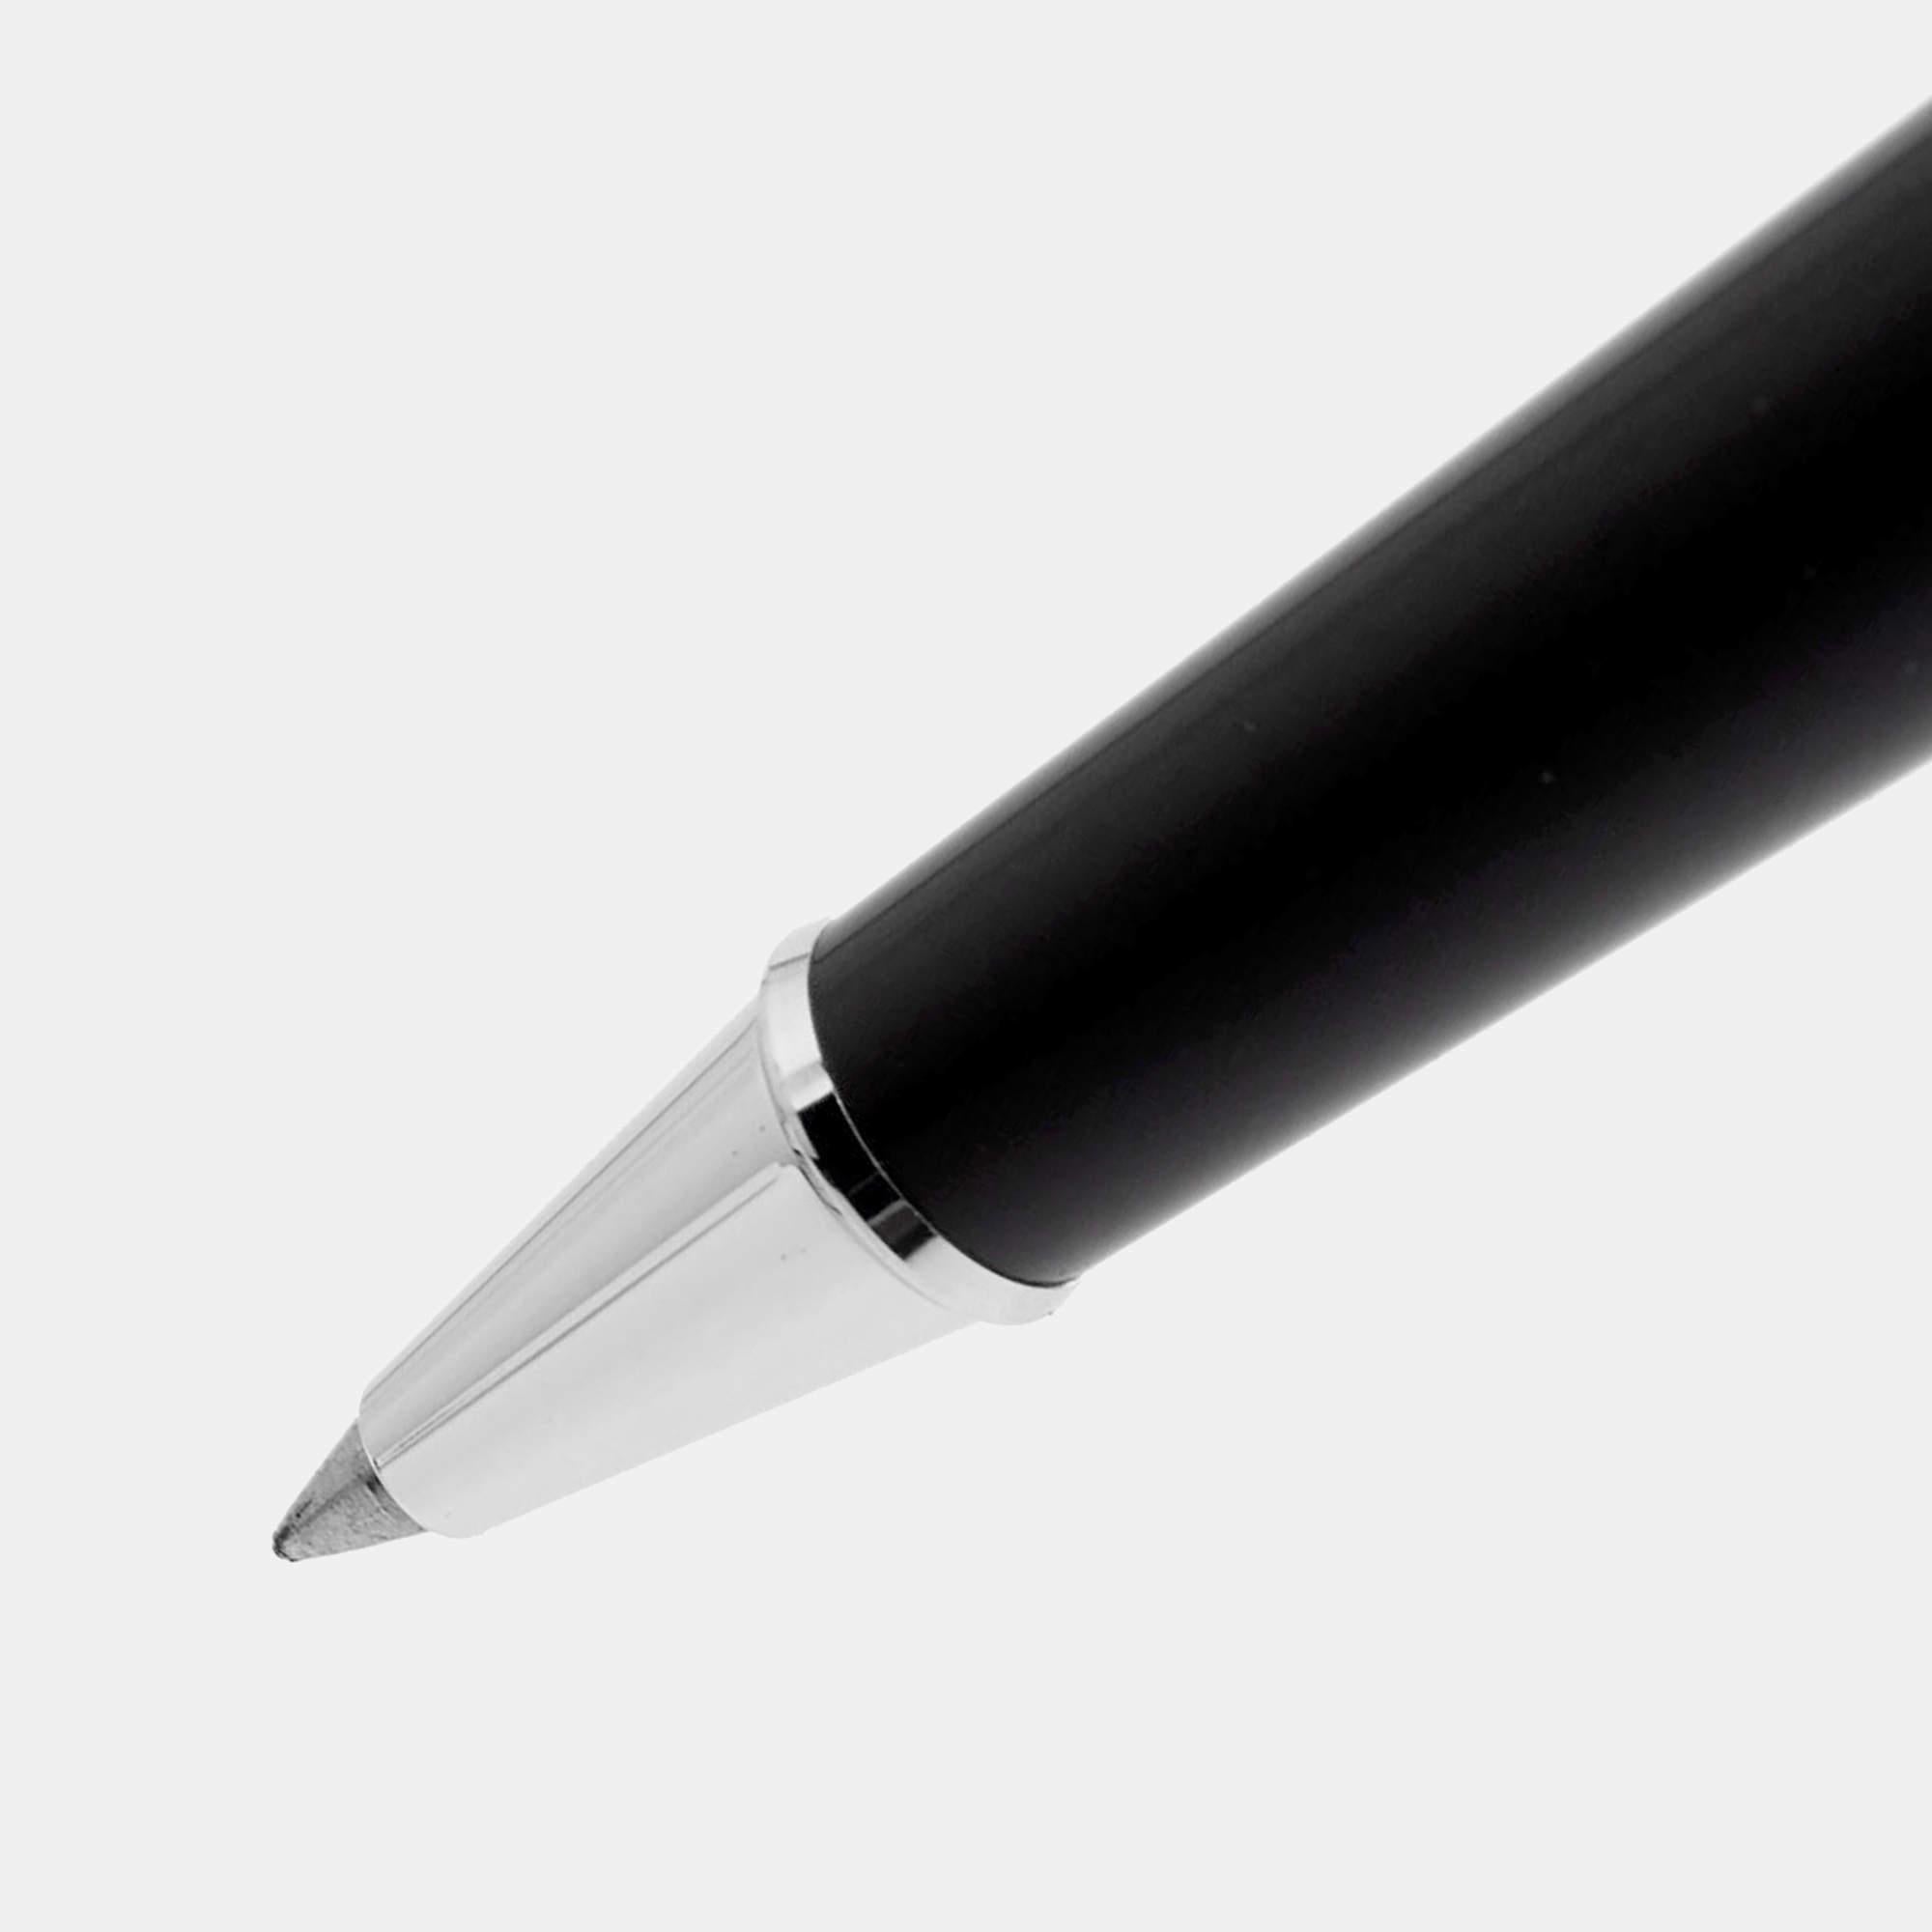 Accessoire élégant permettant d'écrire en douceur, ce stylo Montblanc Meisterstück est fabriqué avec des matériaux de qualité supérieure. Il ajoutera une touche de luxe à votre travail quotidien.

Comprend : Boîte d'origine, étui d'origine, livret